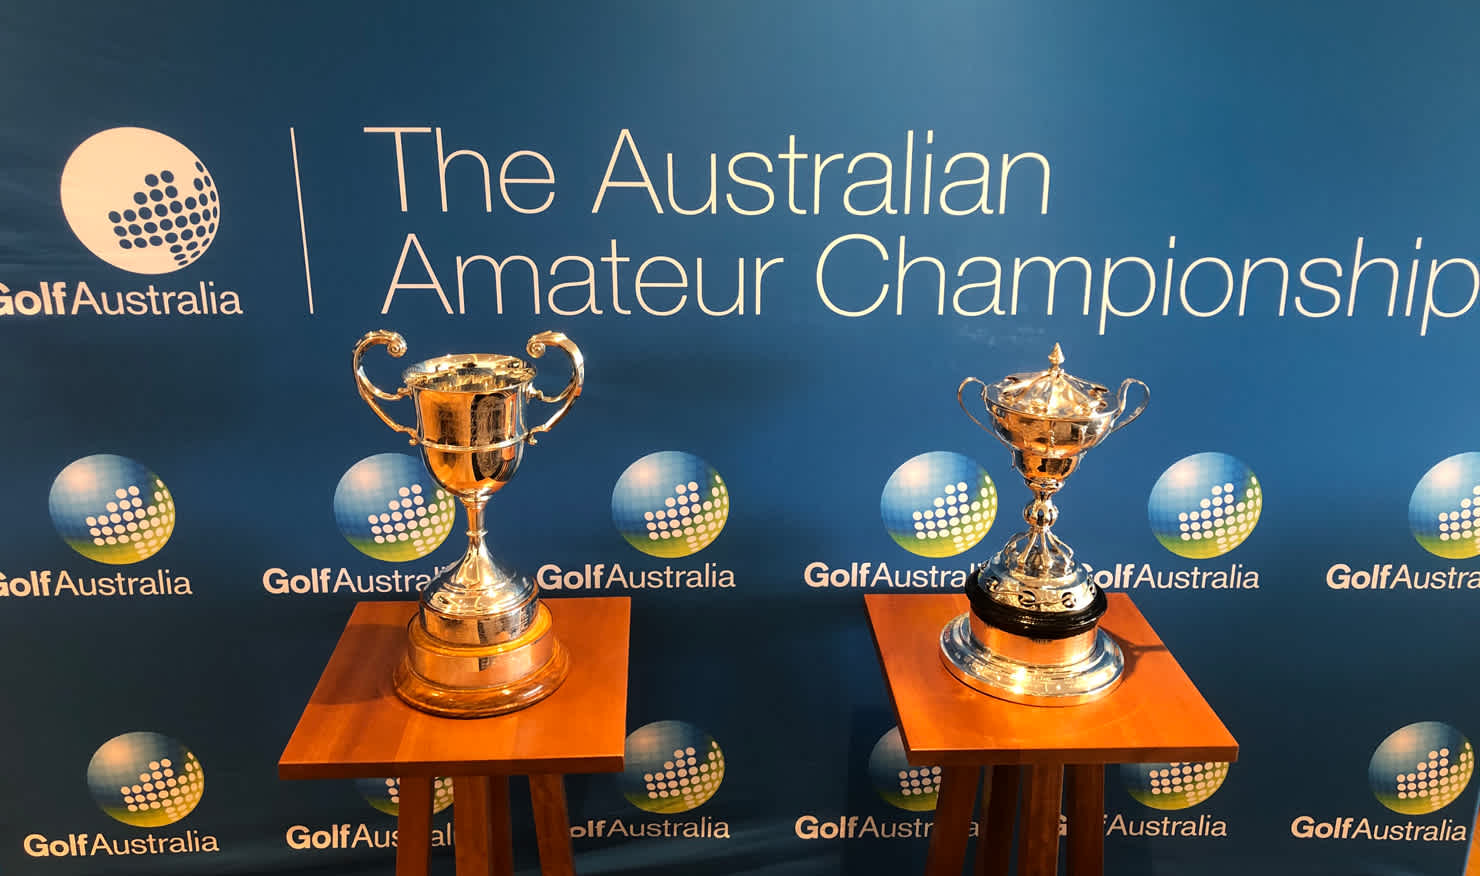 The Australian Amateur Championship trophies.